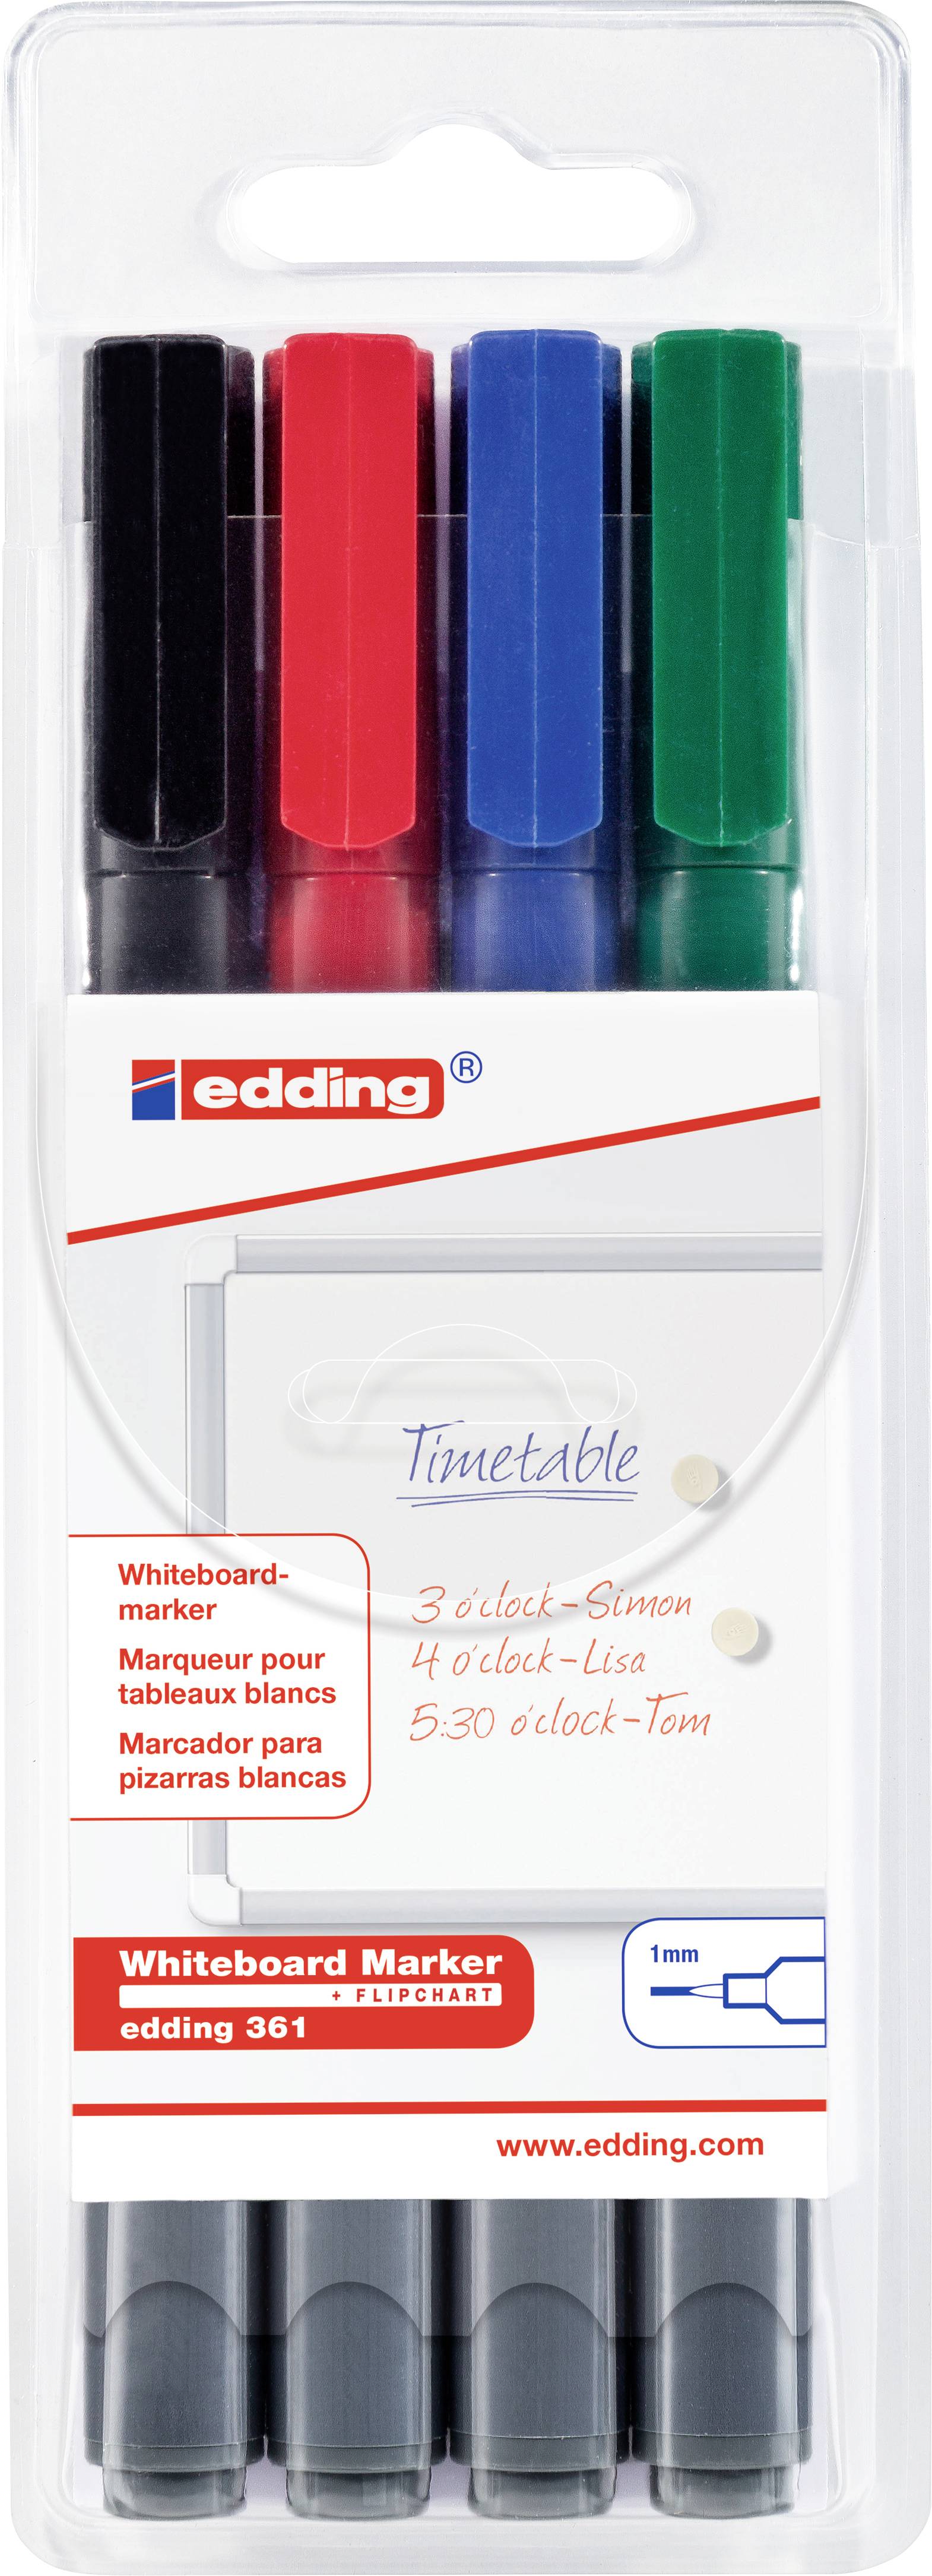 EDDING 4 edding 361 Whiteboard-Marker farbsortiert 1,0 mm; 1 Pack = 4 St.